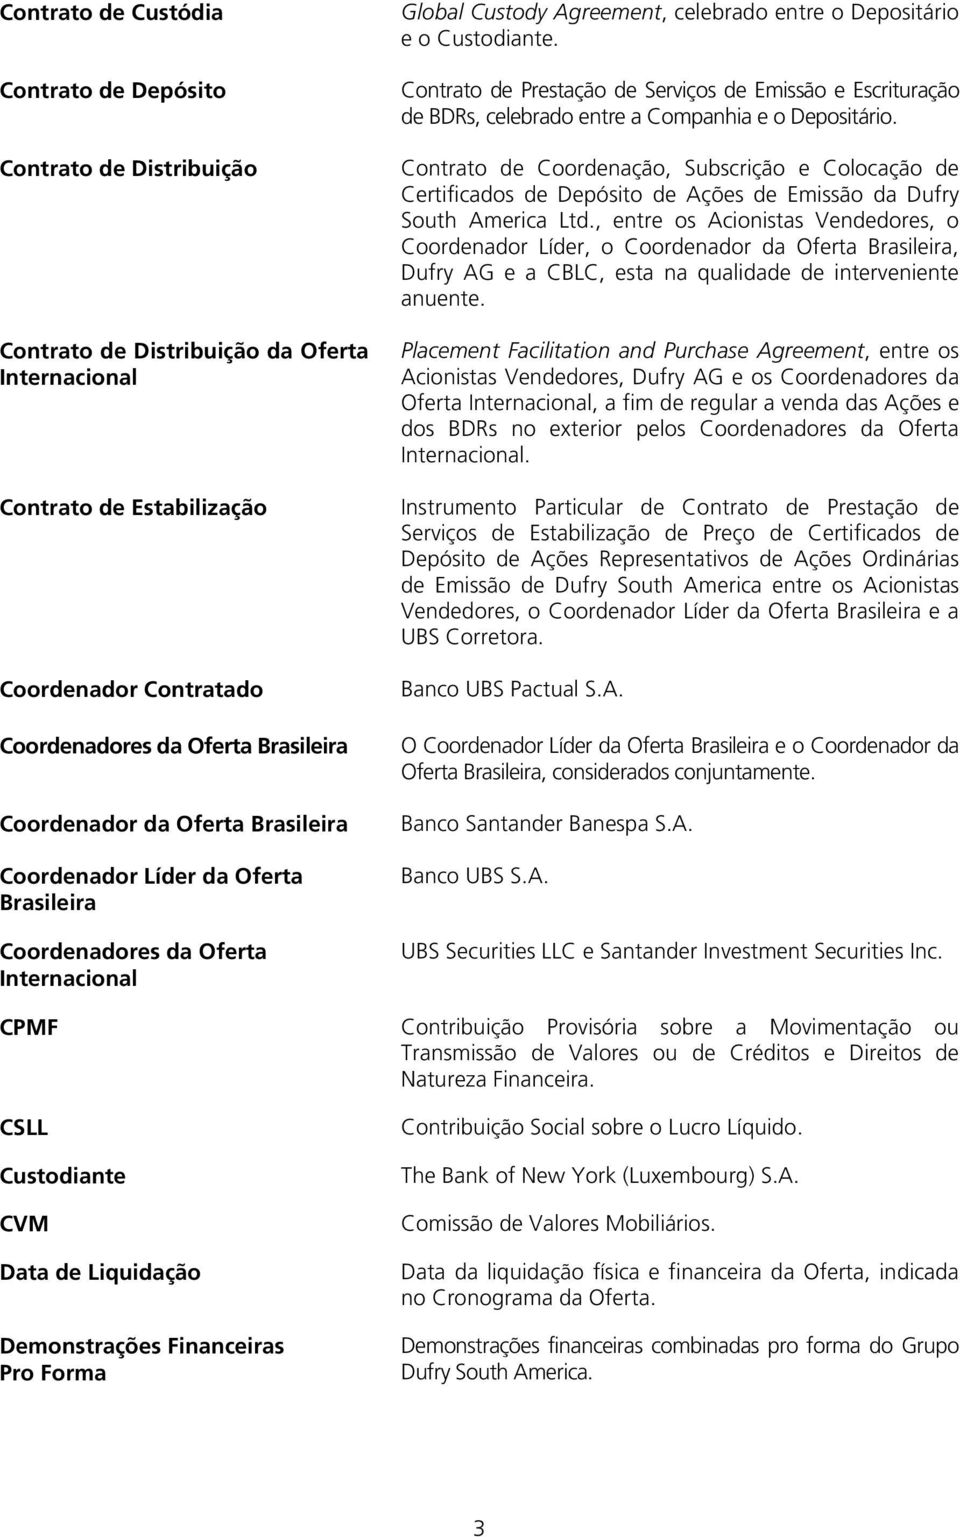 Contrato de Prestação de Serviços de Emissão e Escrituração de BDRs, celebrado entre a Companhia e o Depositário.